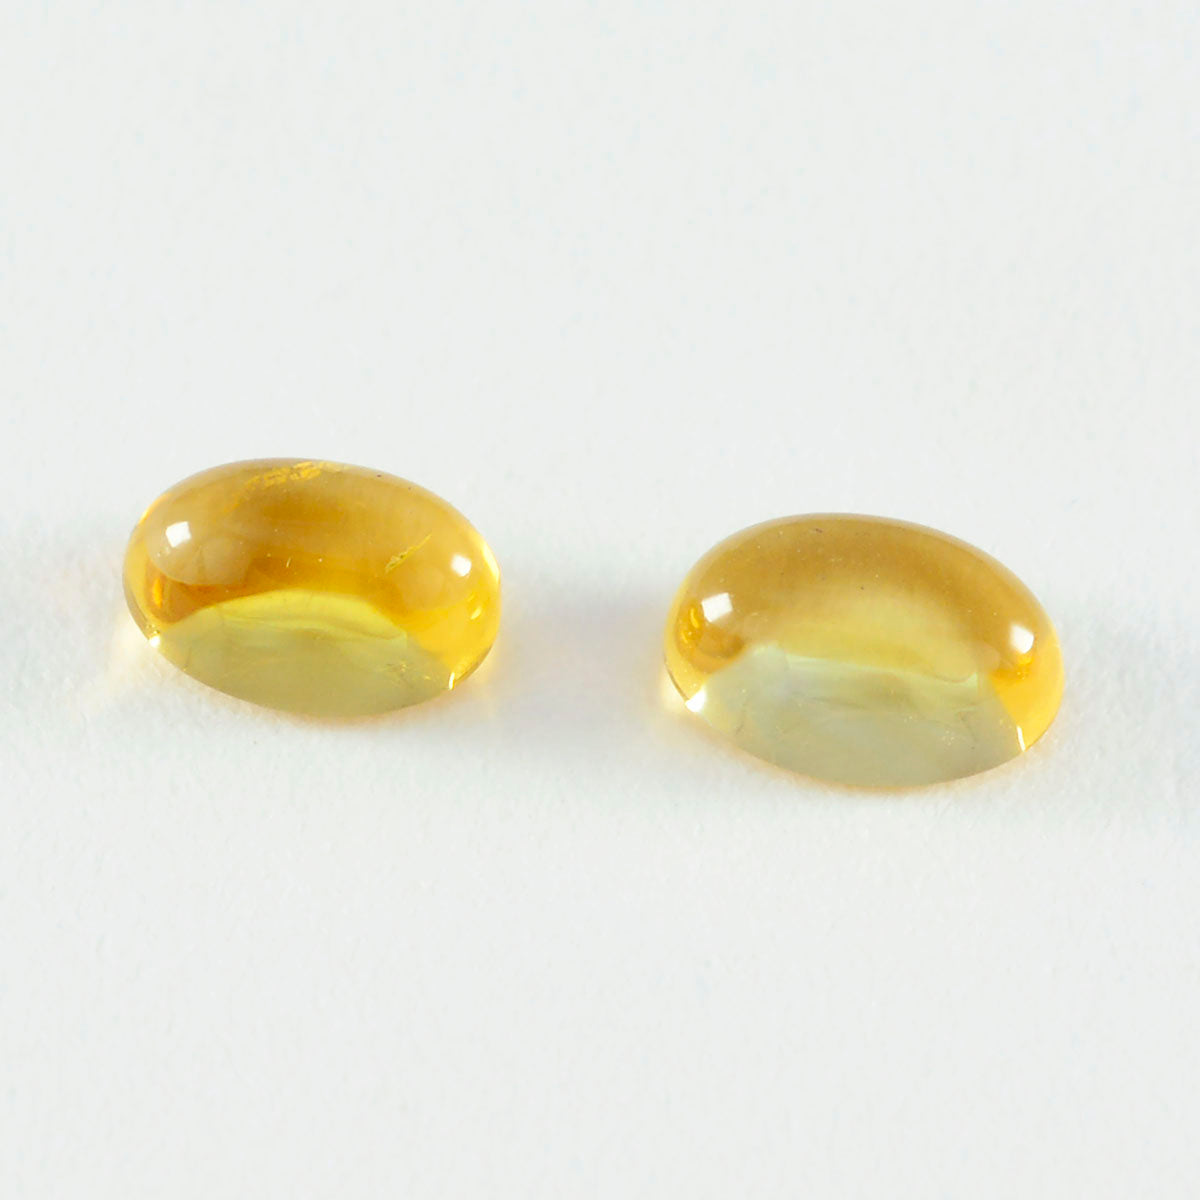 riyogems 1pc cabochon di citrino giallo 9x11 mm di forma ovale, pietra preziosa di eccellente qualità